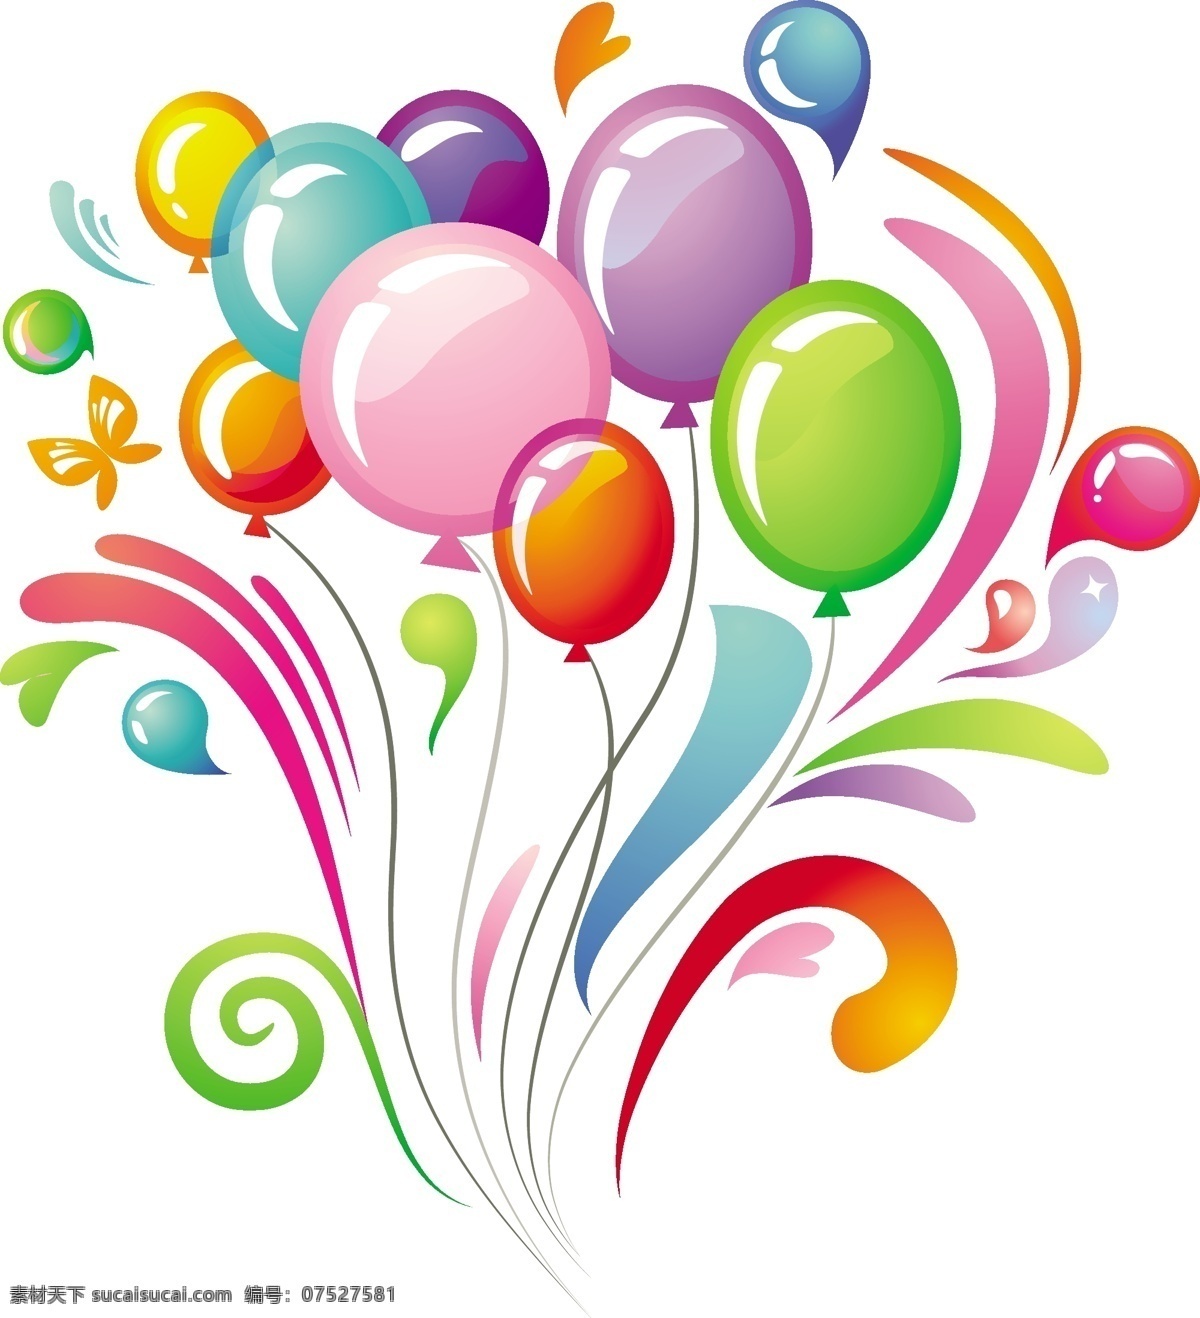 五颜六色 气球 庆典 背景 矢量 web 插画 创意 免费 病 媒 生物 时尚 独特的 原始的 新鲜的 设计设计气球 丰富多彩的 庆祝活动 节日的 psd源文件